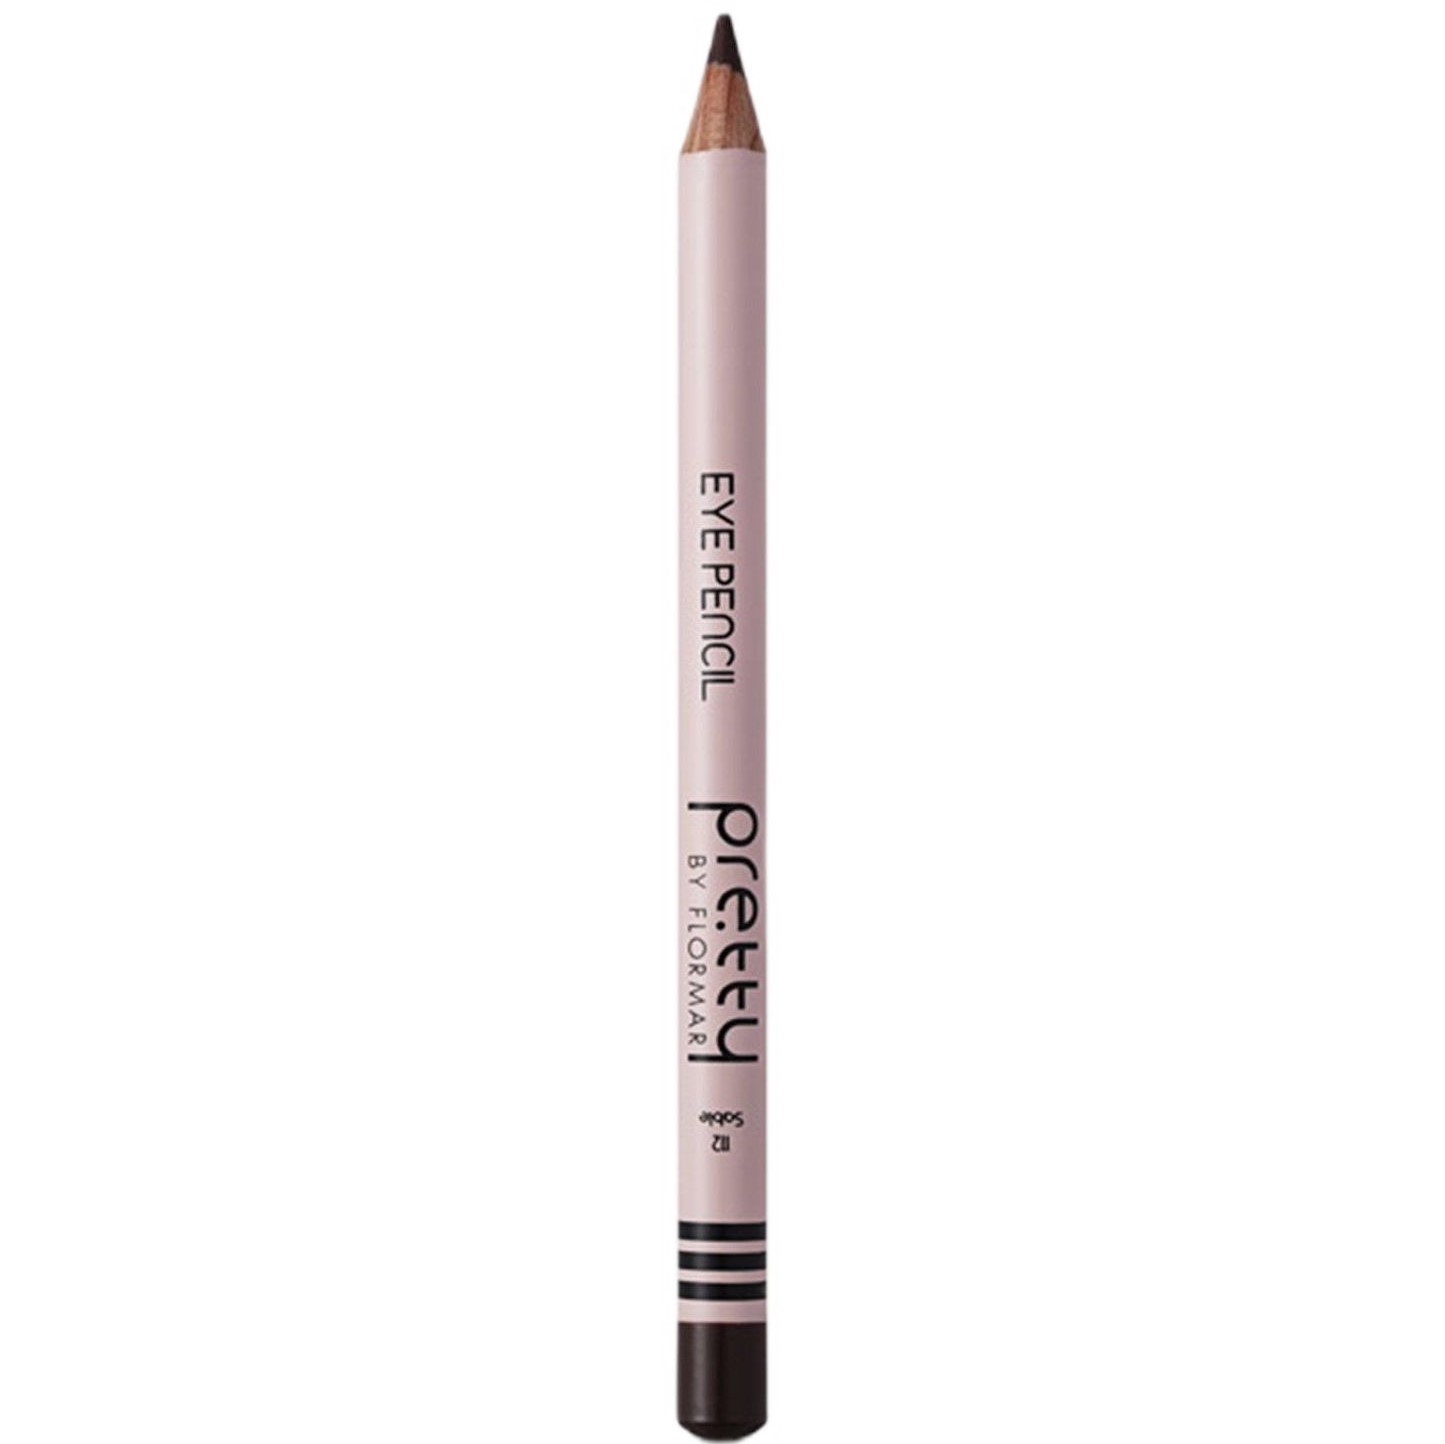 Олівець для очей Pretty Eye Pencil відтінок 112 (Sable) 1.14 г - фото 1